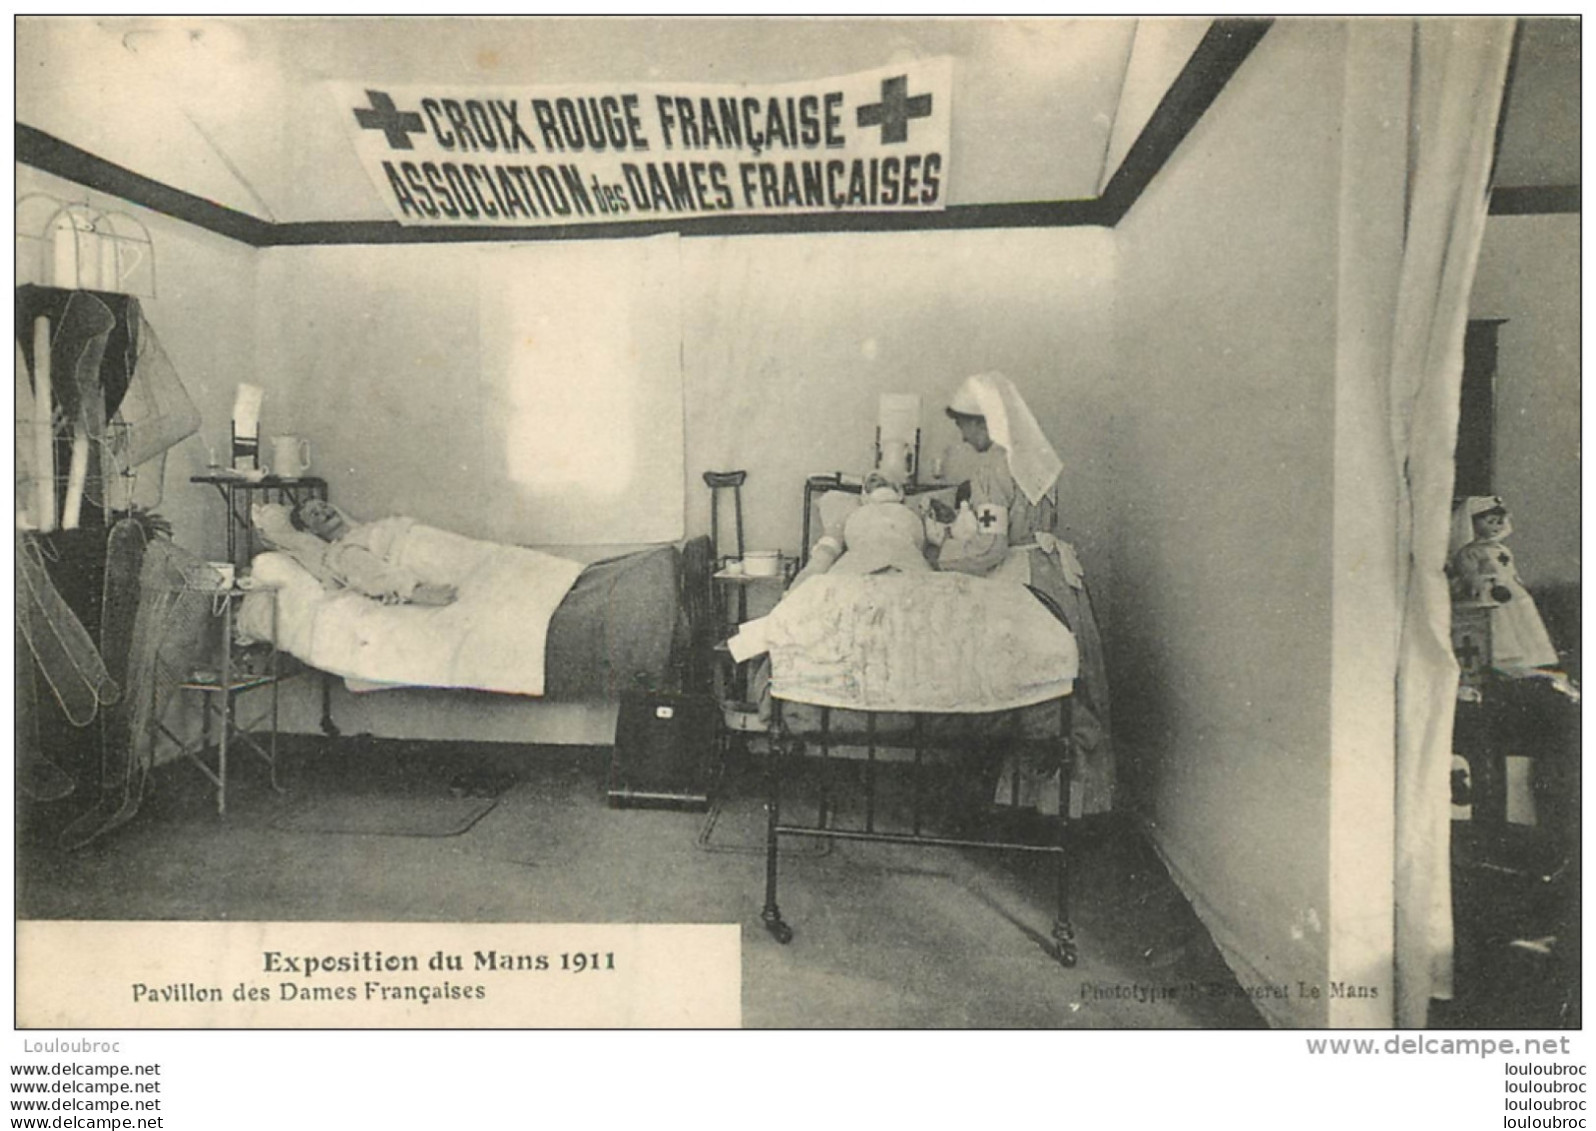 CROIX ROUGE FRANCAISE ASSOCIATION DES DAMES FRANCAISES EXPOSITION DU MANS 1911 PAVILLON DES DAMES FRANCAISES - Health